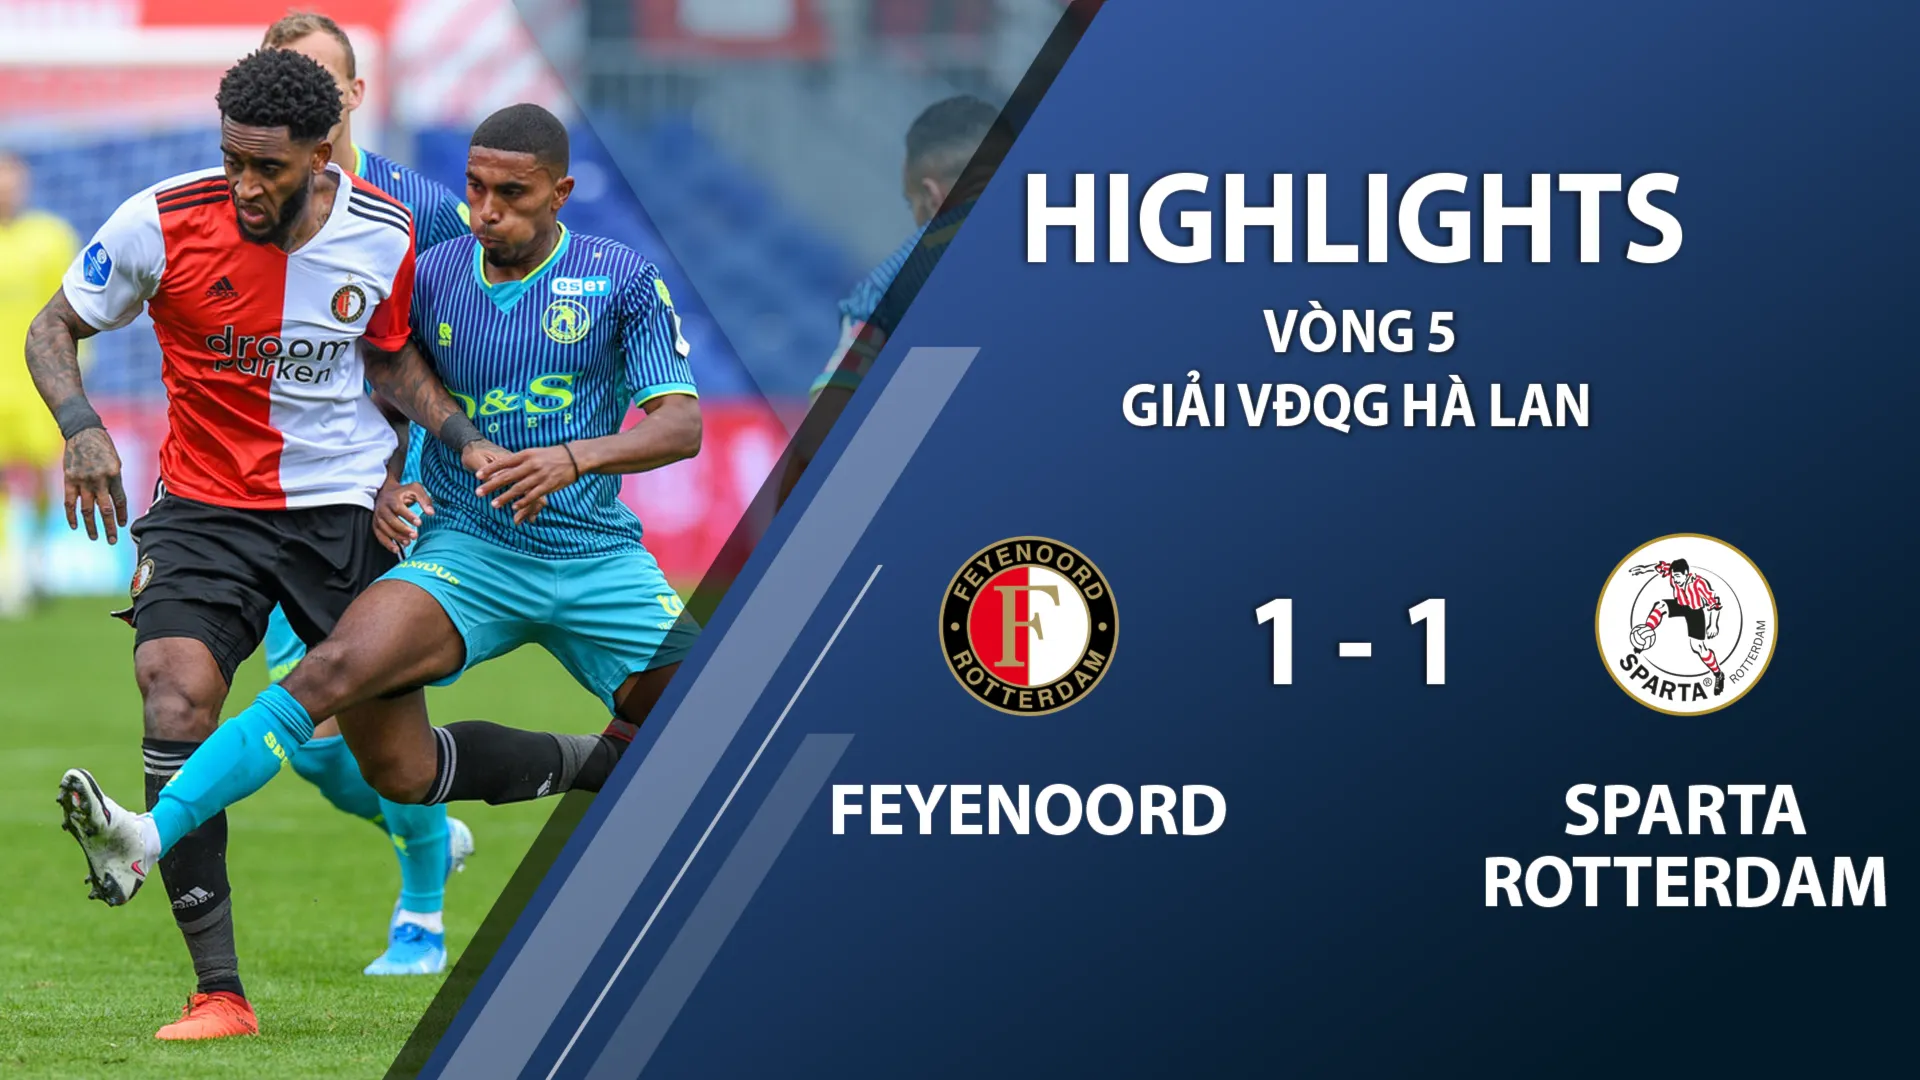 Highlights Feyenoord 1-1 Sparta Rotterdam (vòng 5 giải VĐQG Hà Lan 2020/21)	